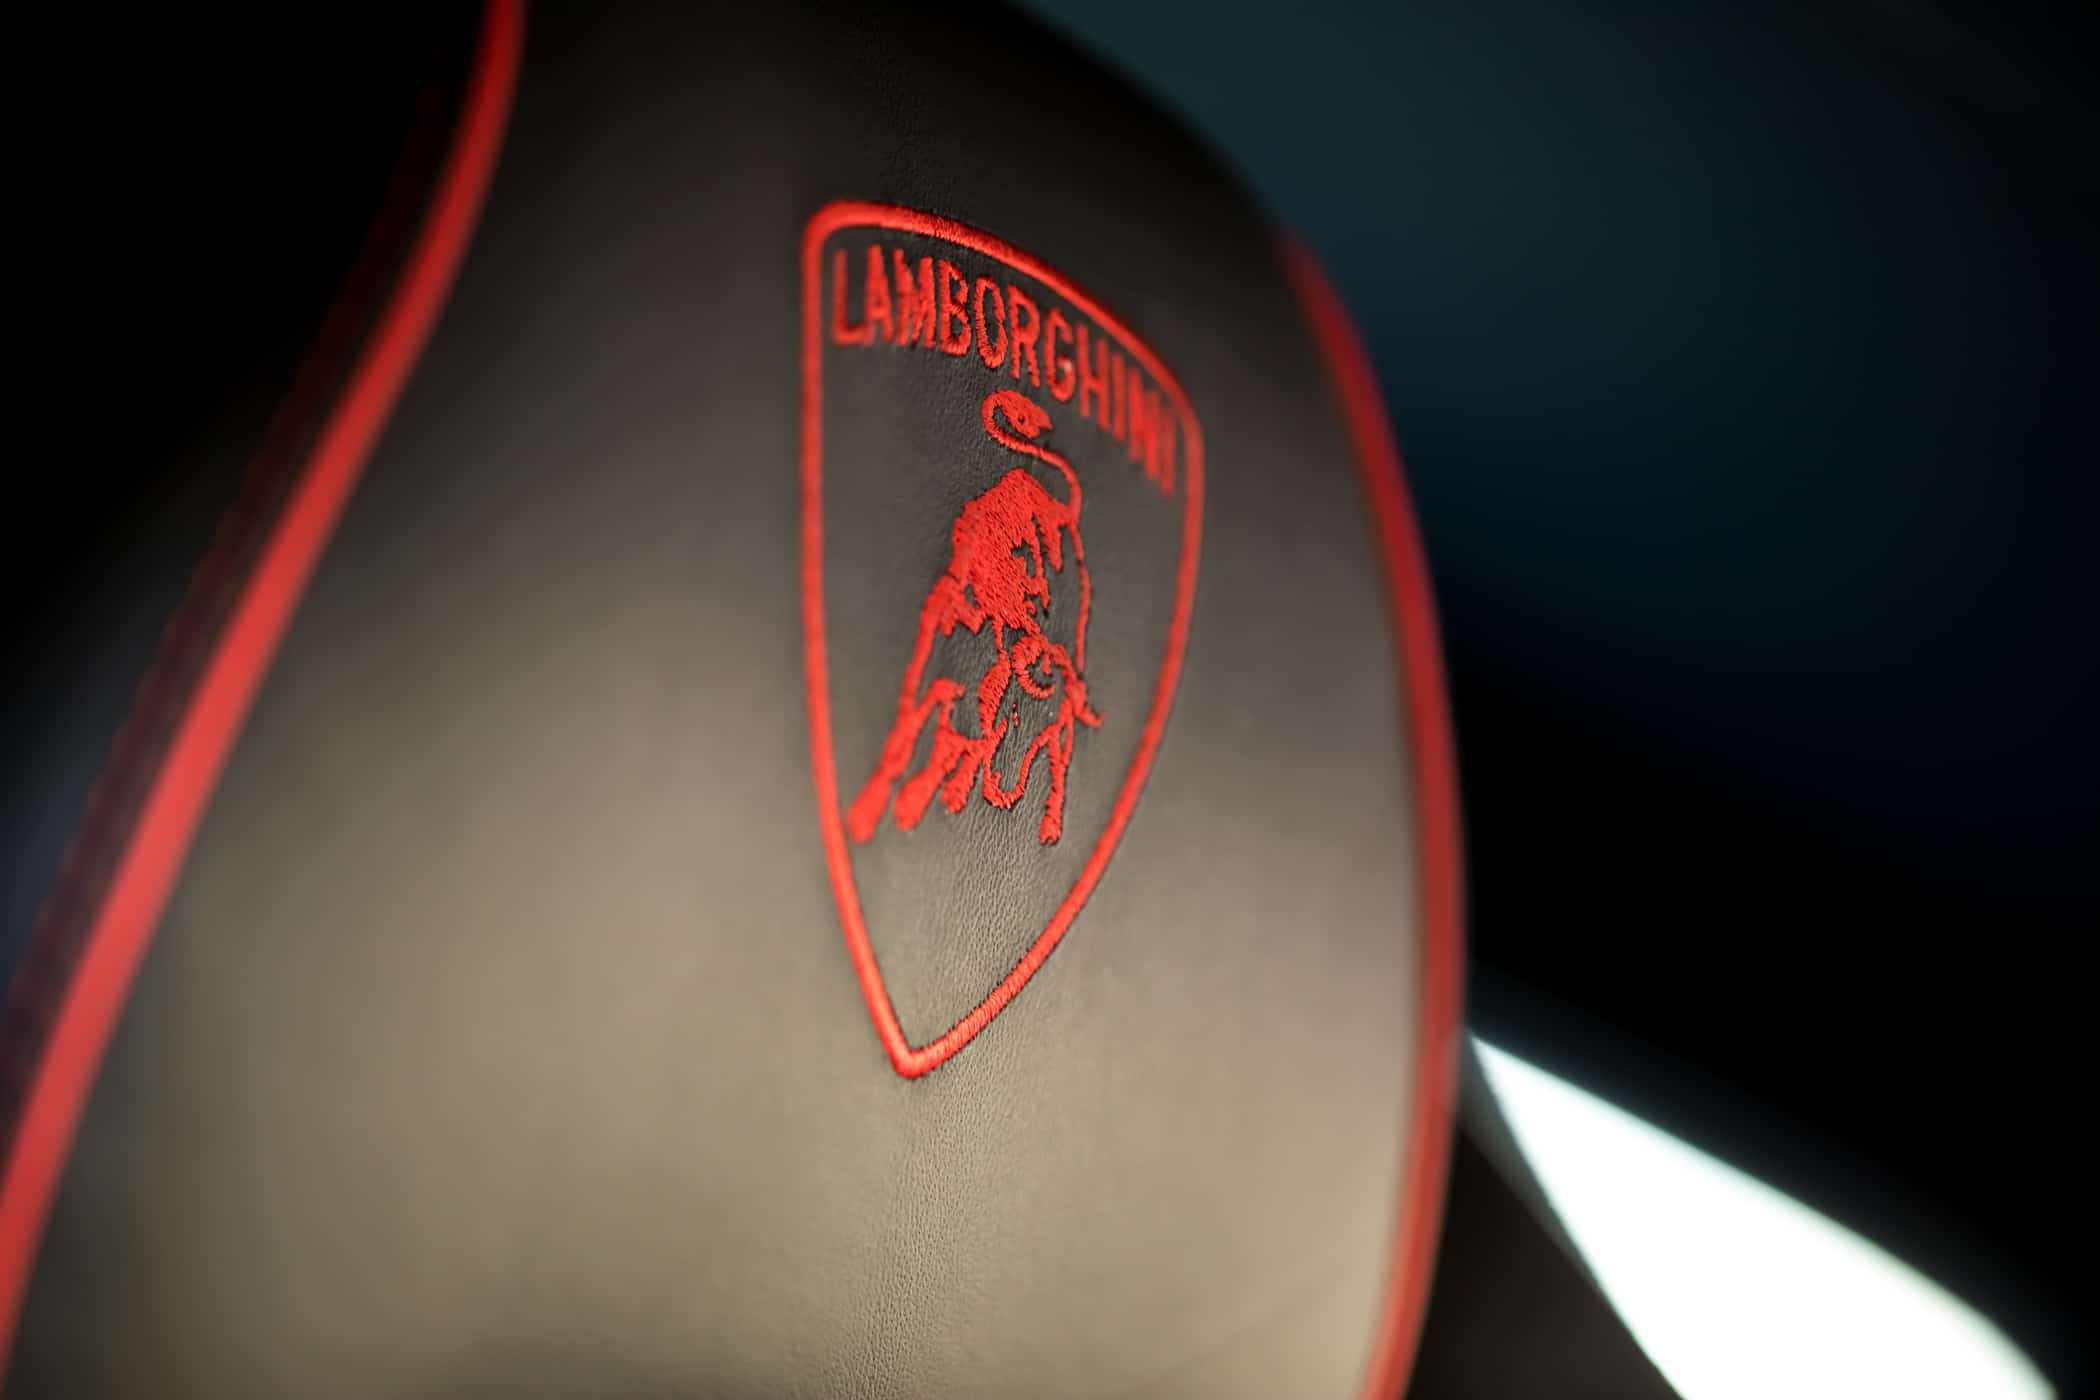 Lamborghini logo stitching on seat